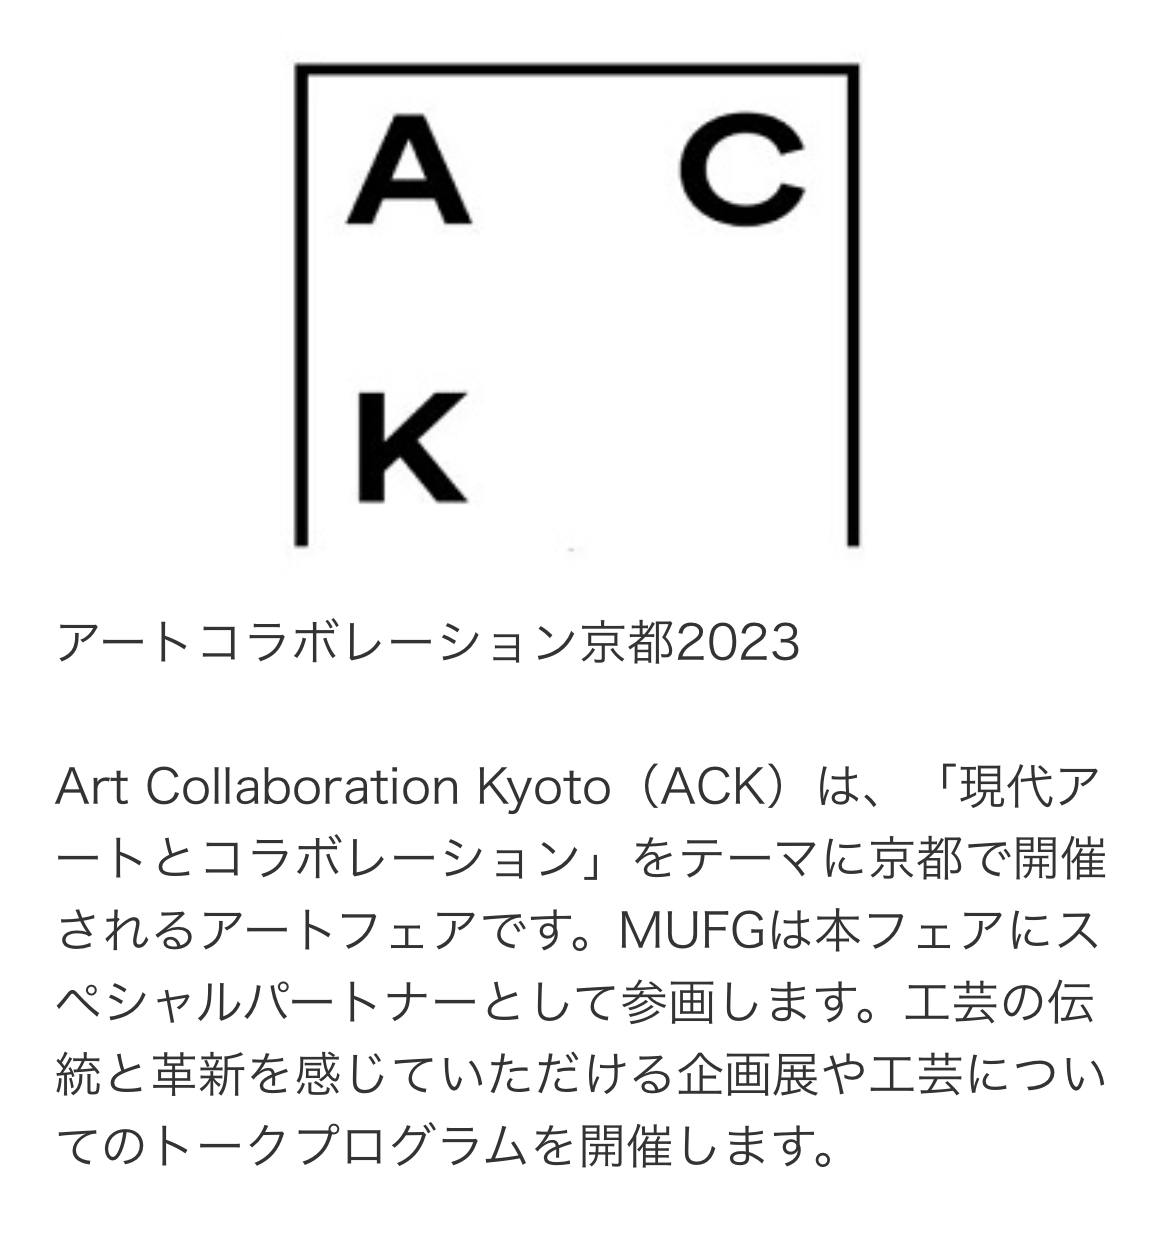 【展示会】「Art Collaboration Kyoto 2023」